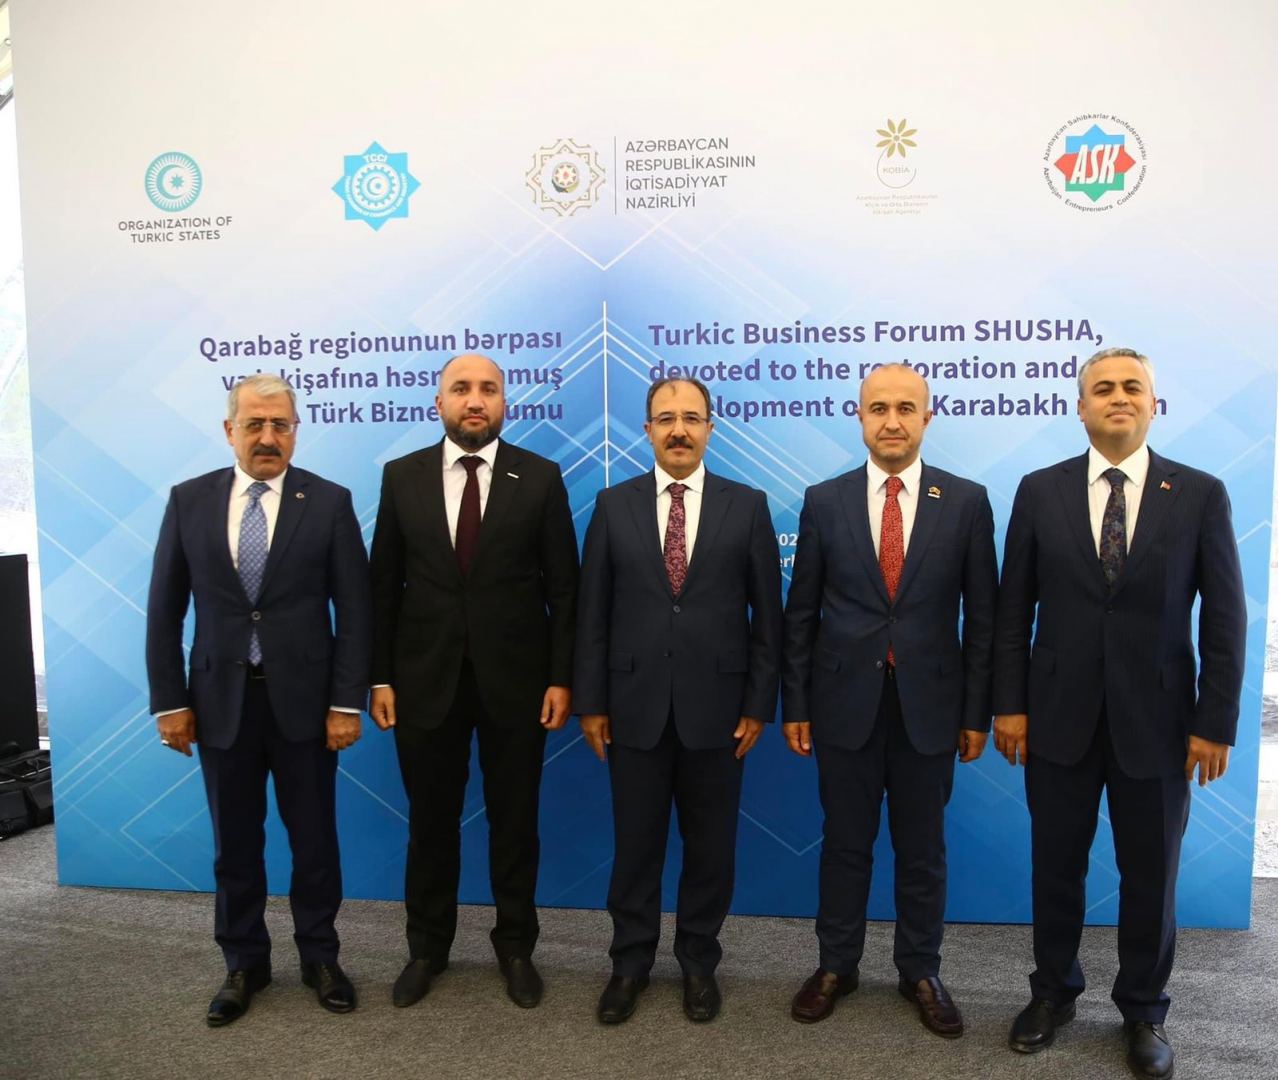 MÜSİAD-Azerbaycan нацелен на увеличение прямых иностранных инвестиций в экономику Азербайджана - Рашад Джабирли (ФОТО)